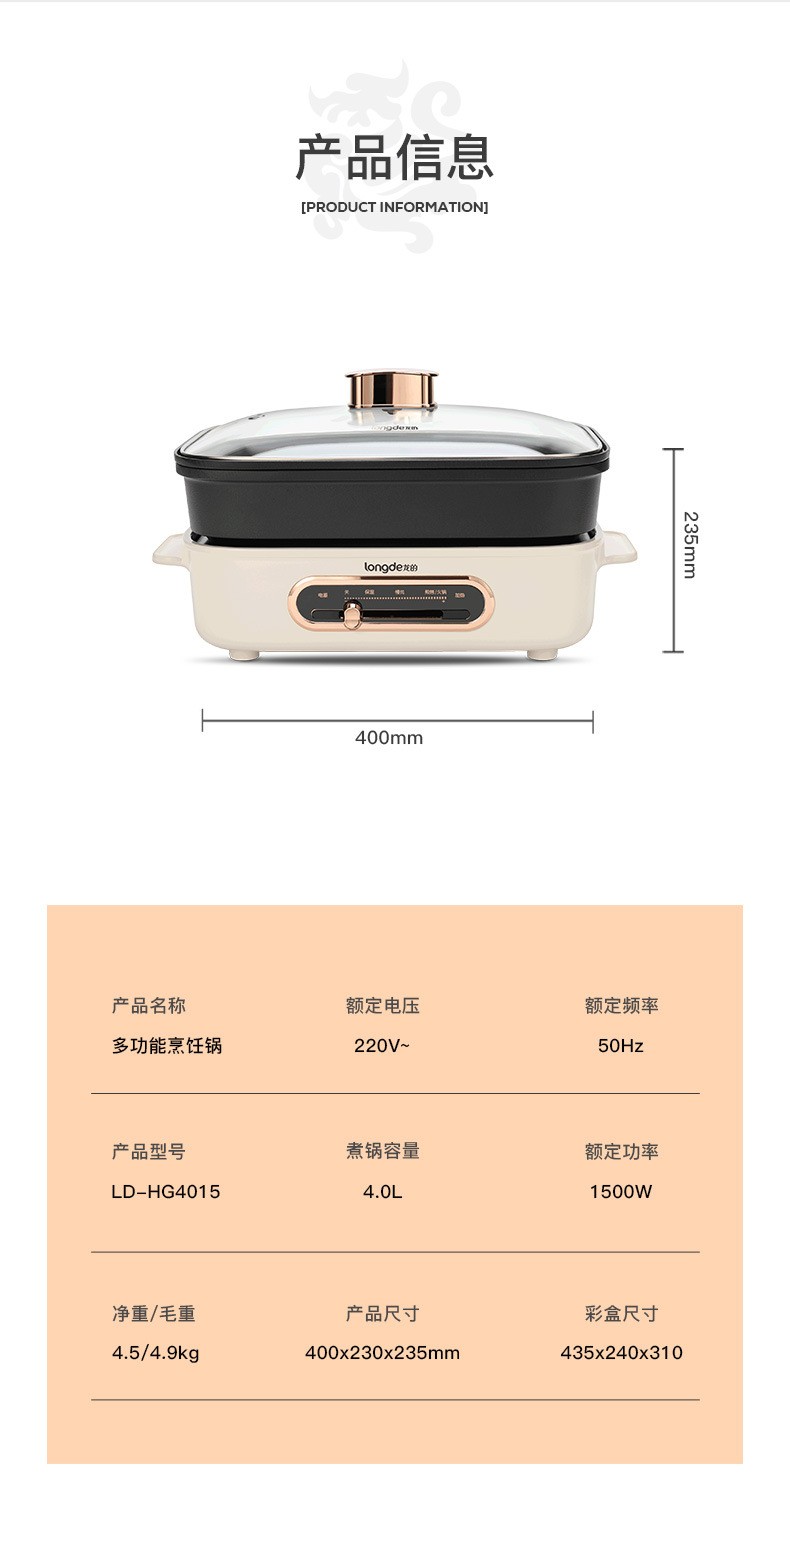 龙的米白色家用机械式料理锅价格